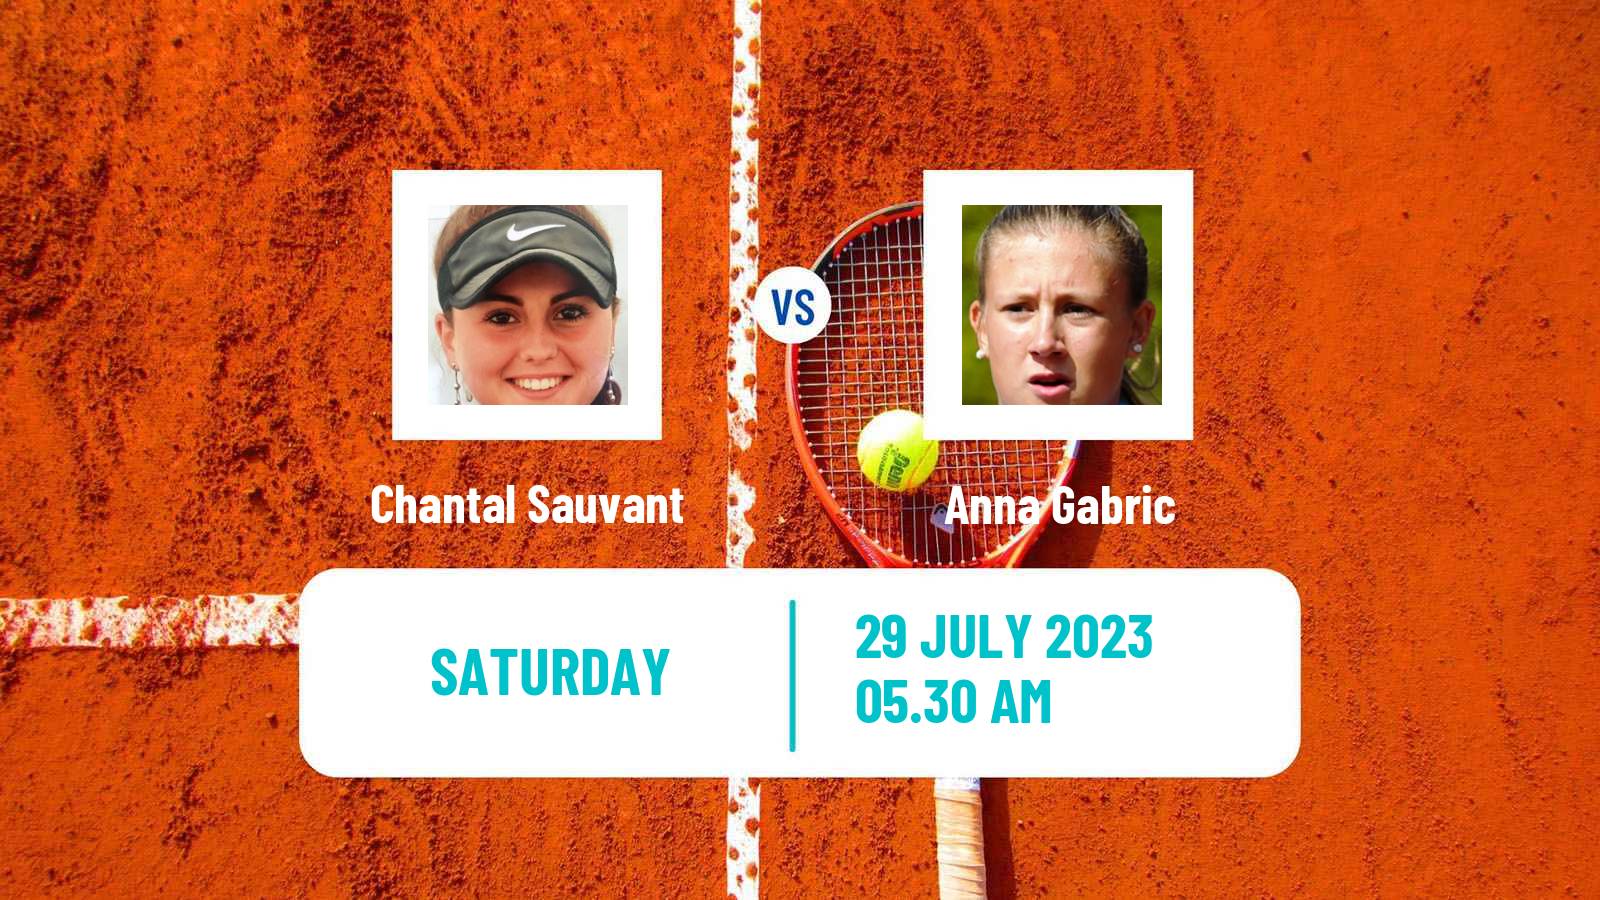 Tennis ITF W25 Horb Women Chantal Sauvant - Anna Gabric